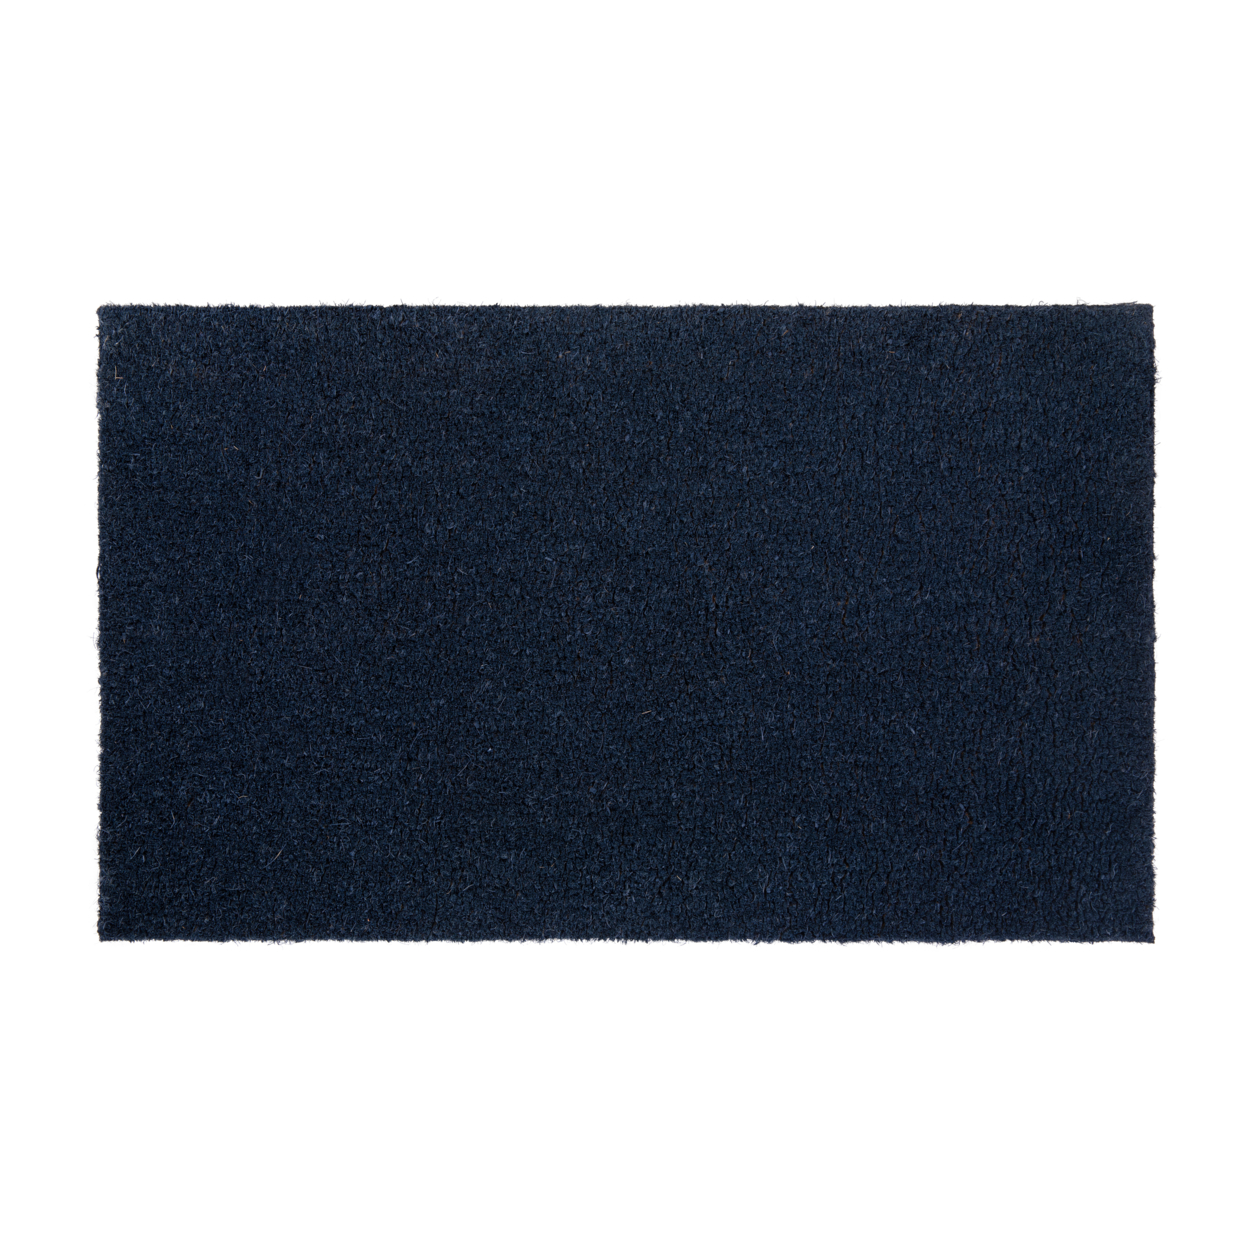 18x30 Navy Coir Doormat